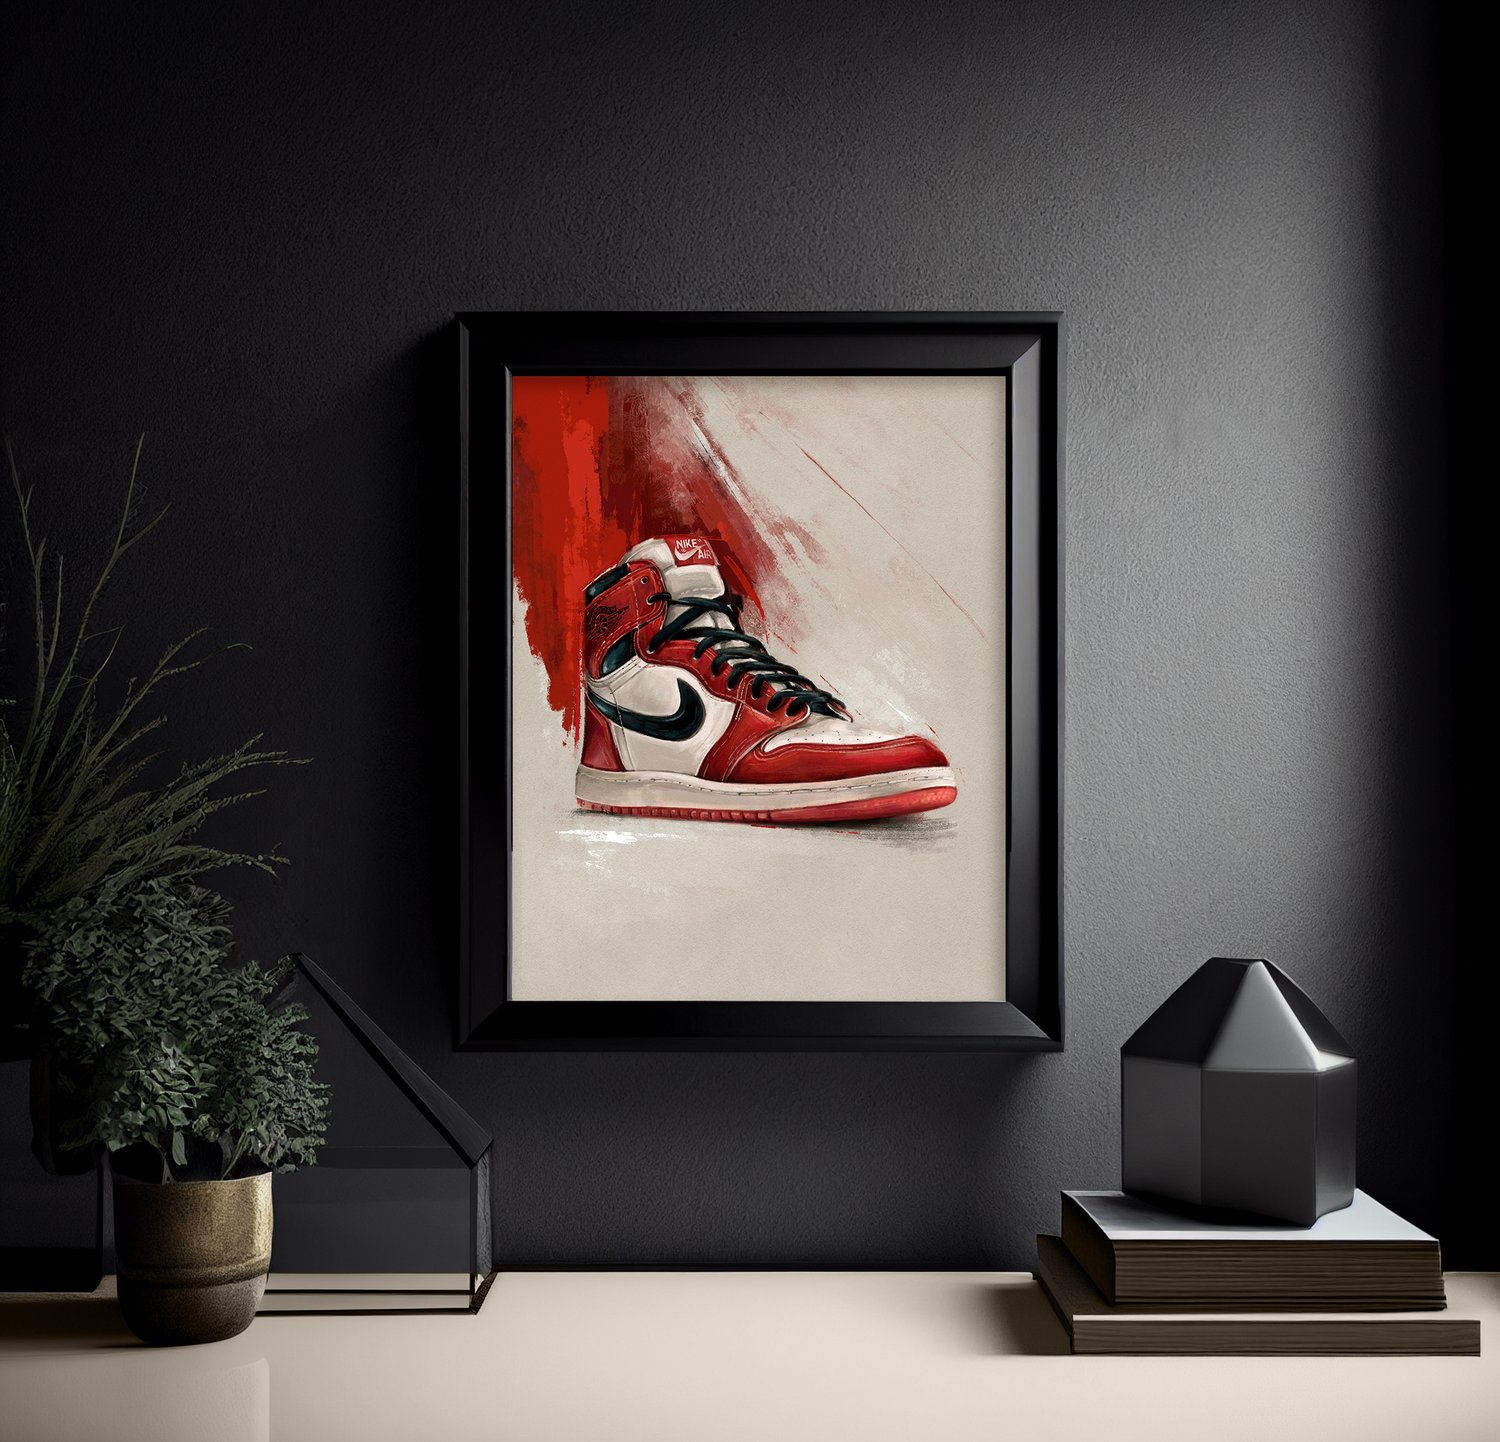 Image of "Air" / Air Jordan 1